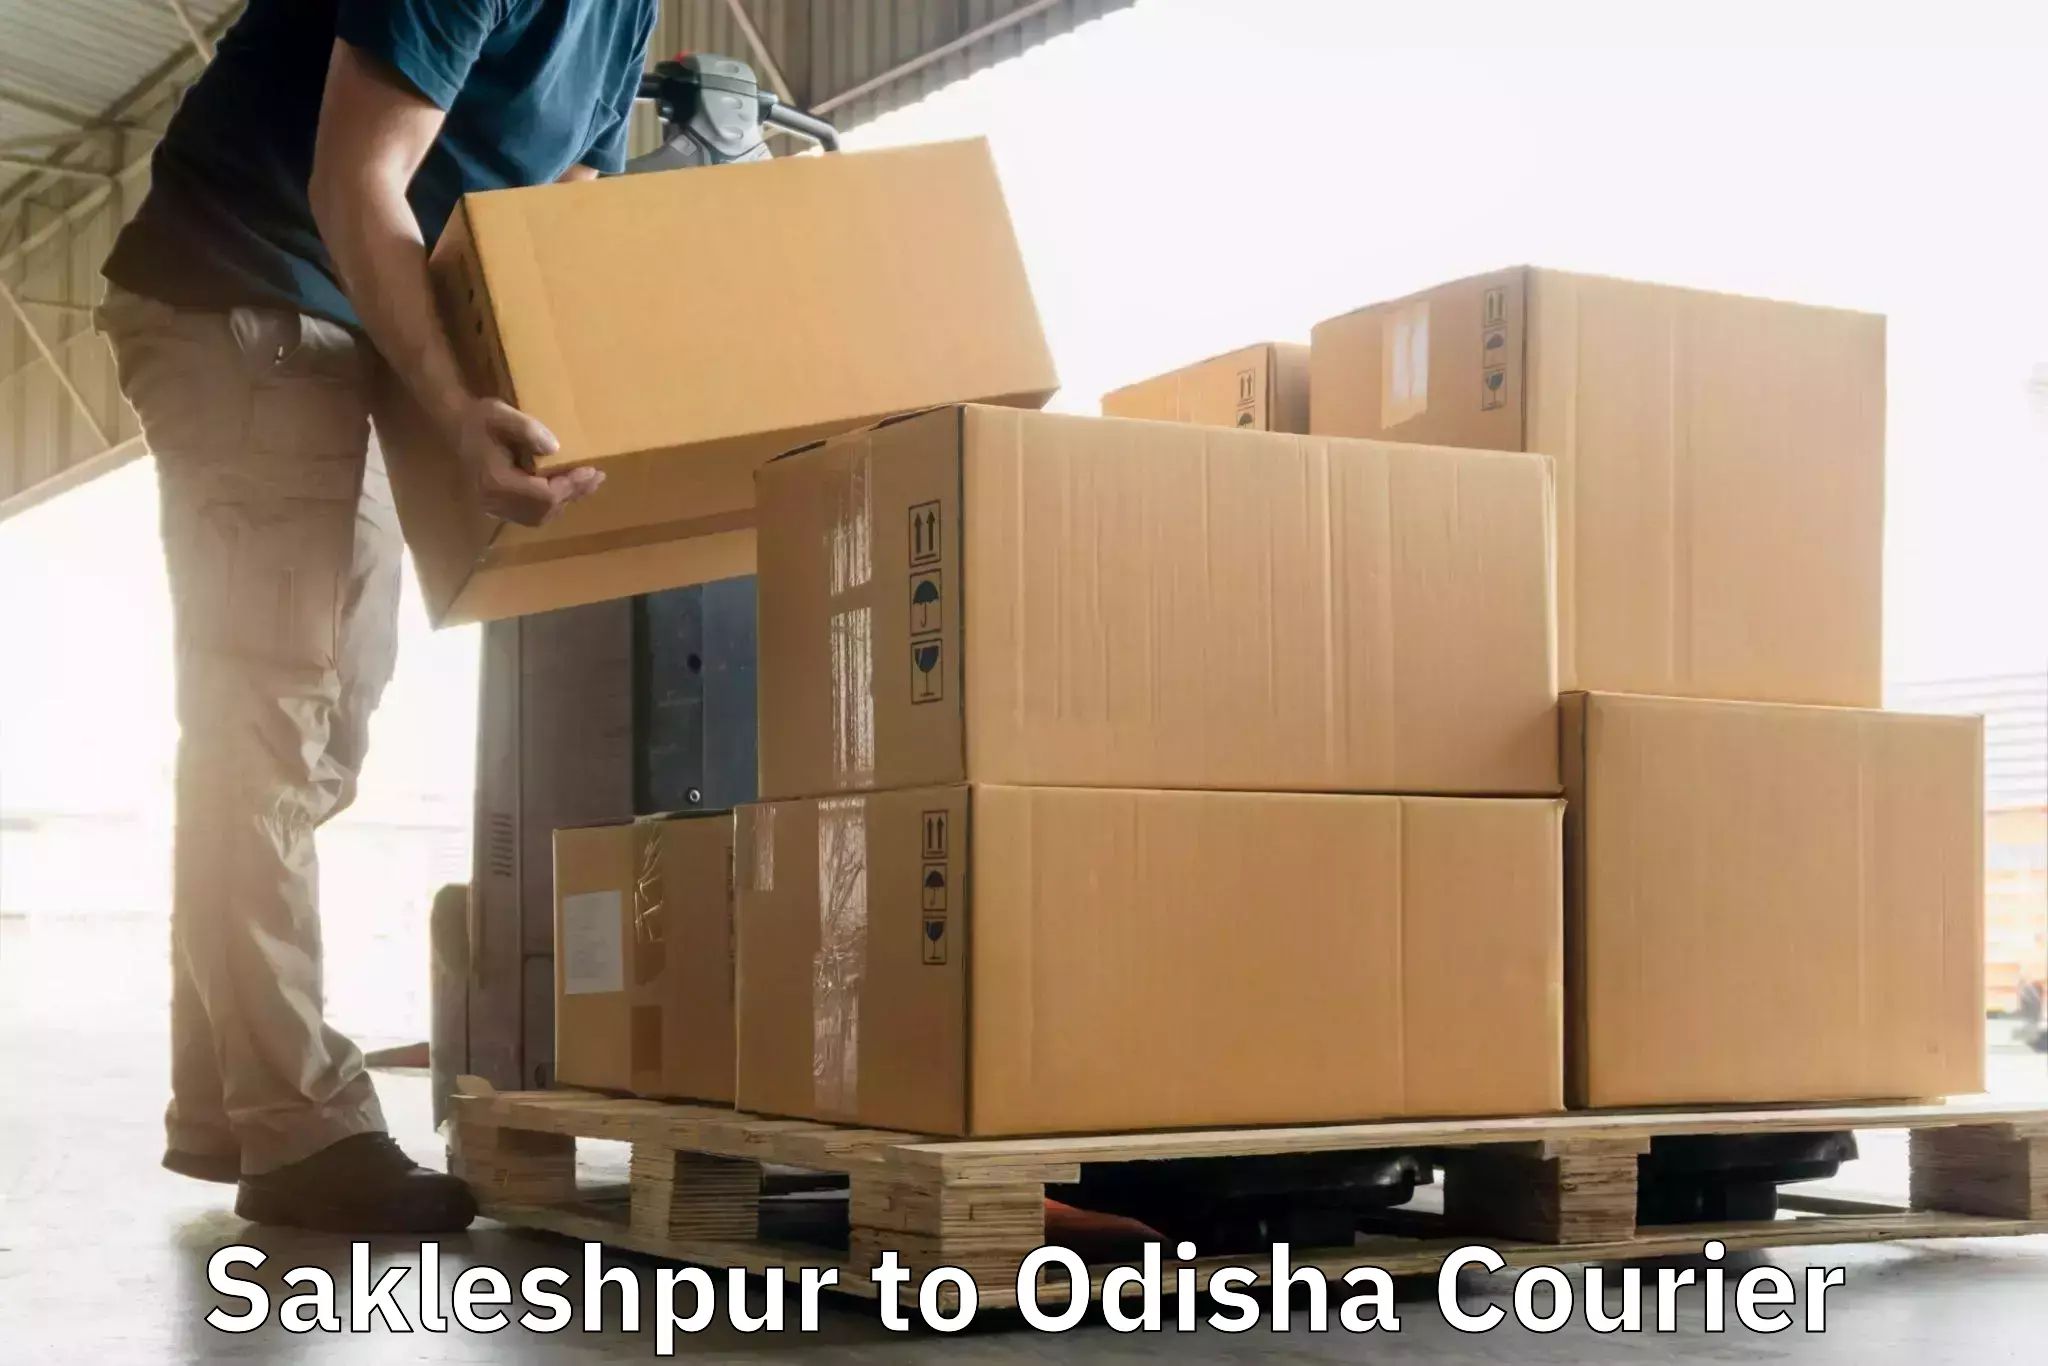 Personalized courier experiences Sakleshpur to Pottangi